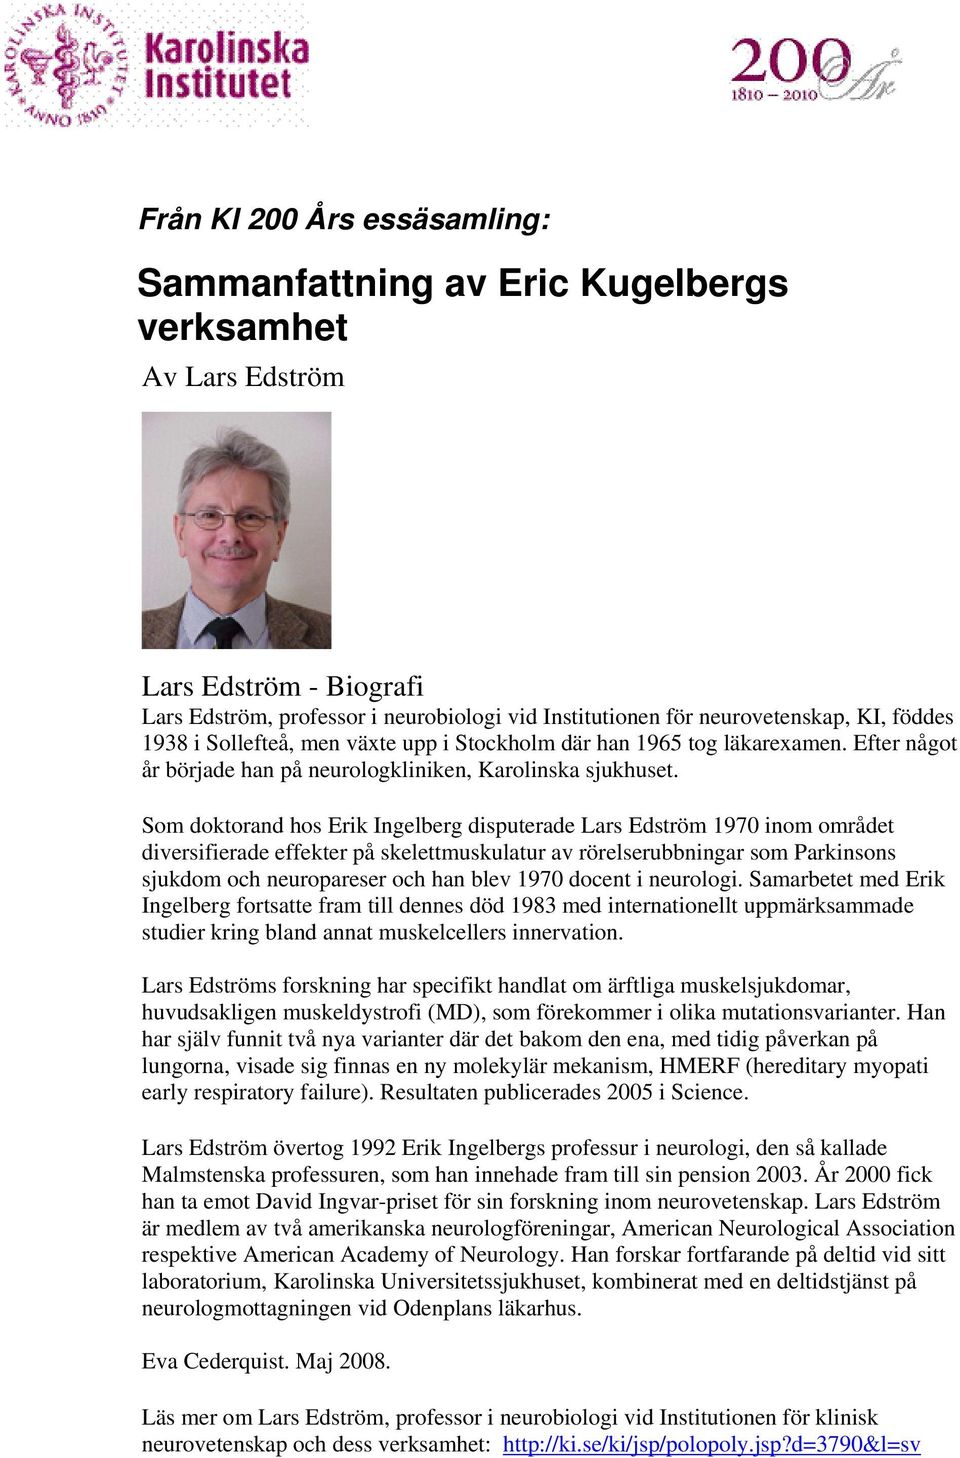 Som doktorand hos Erik Ingelberg disputerade Lars Edström 1970 inom området diversifierade effekter på skelettmuskulatur av rörelserubbningar som Parkinsons sjukdom och neuropareser och han blev 1970